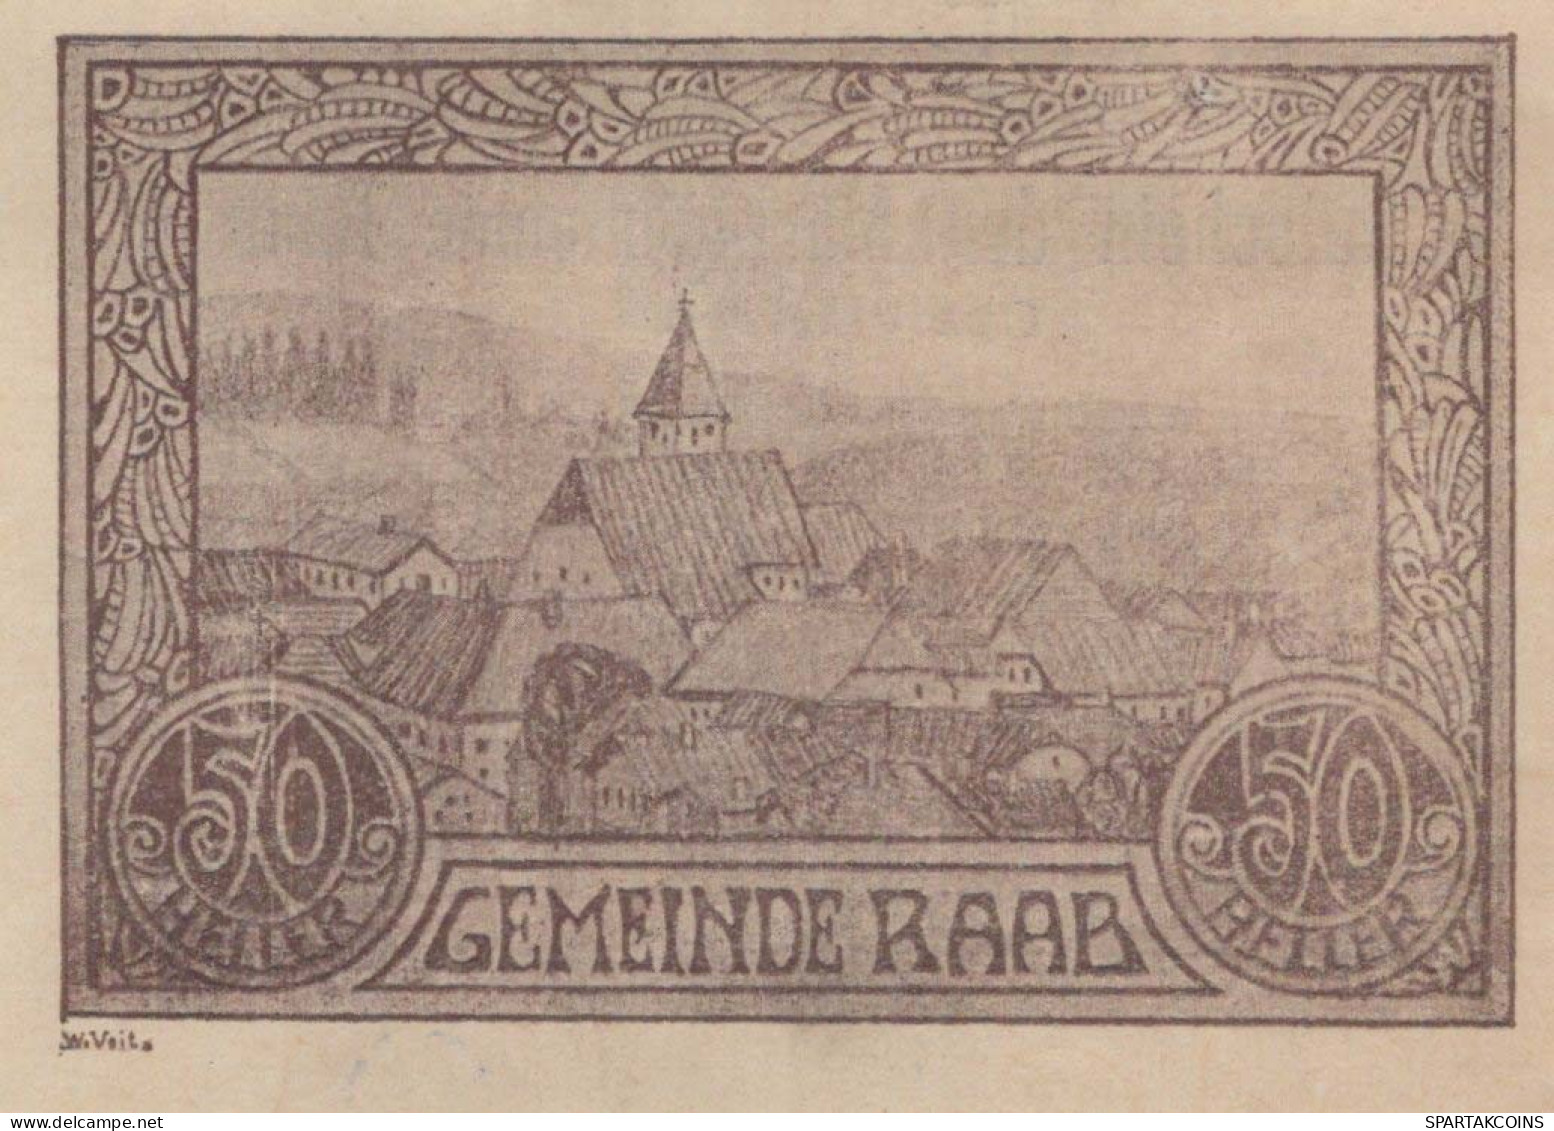 50 HELLER 1920 Stadt RAAB Oberösterreich Österreich Notgeld Banknote #PD962 - [11] Emissions Locales